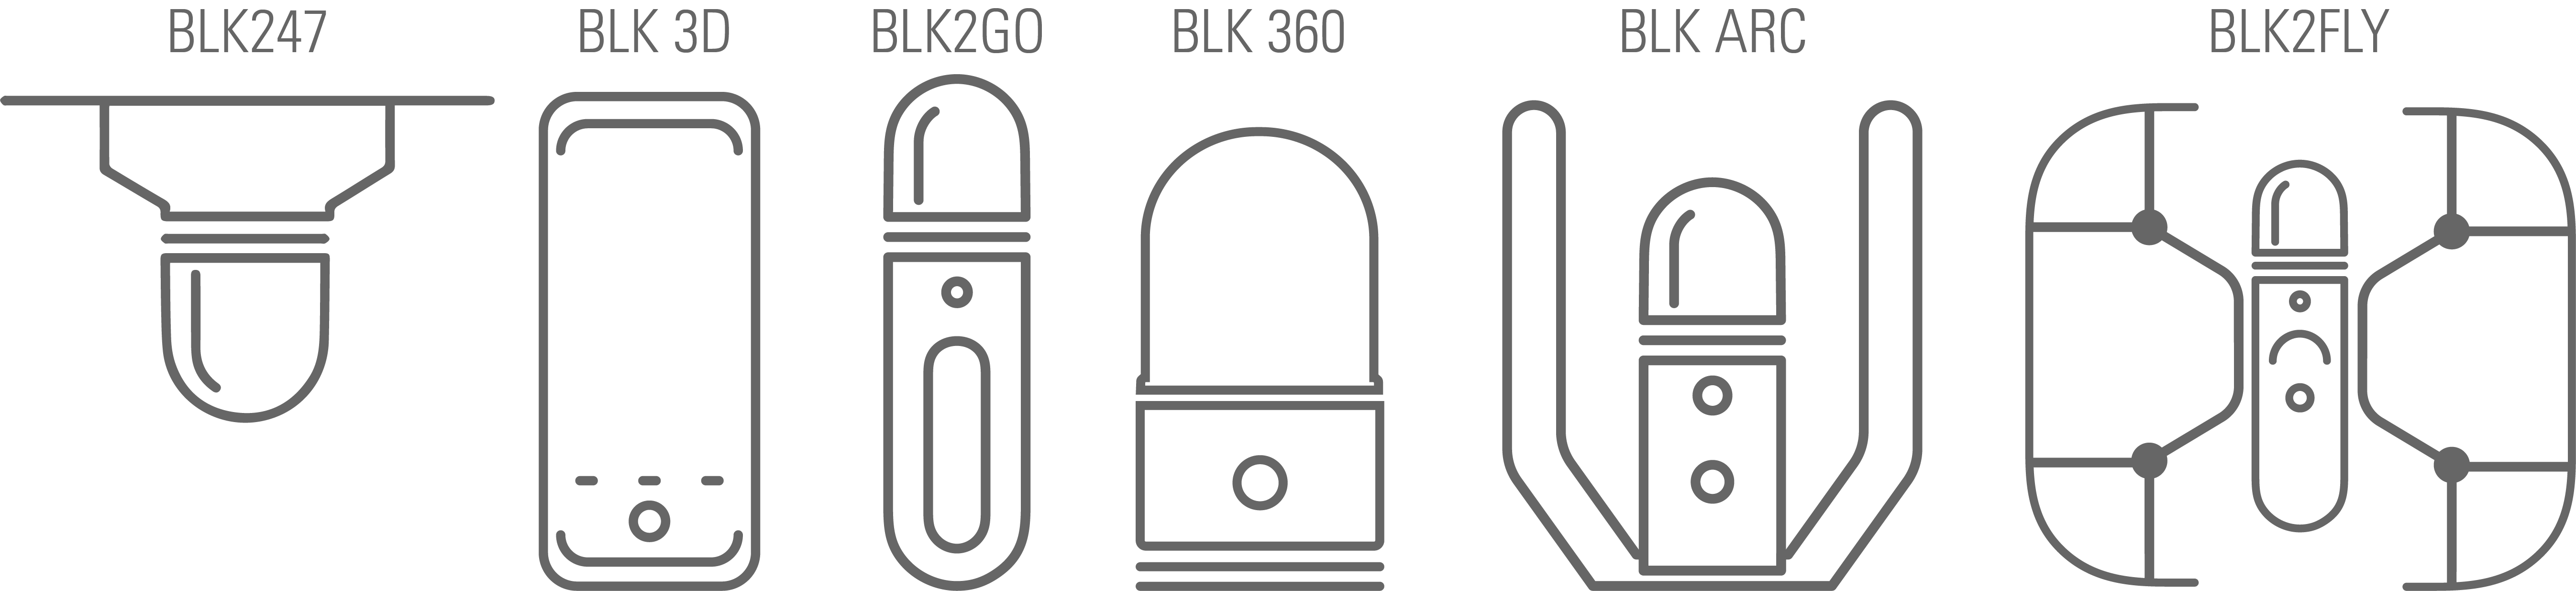 Vecteurs des produits BLK avec étiquettes